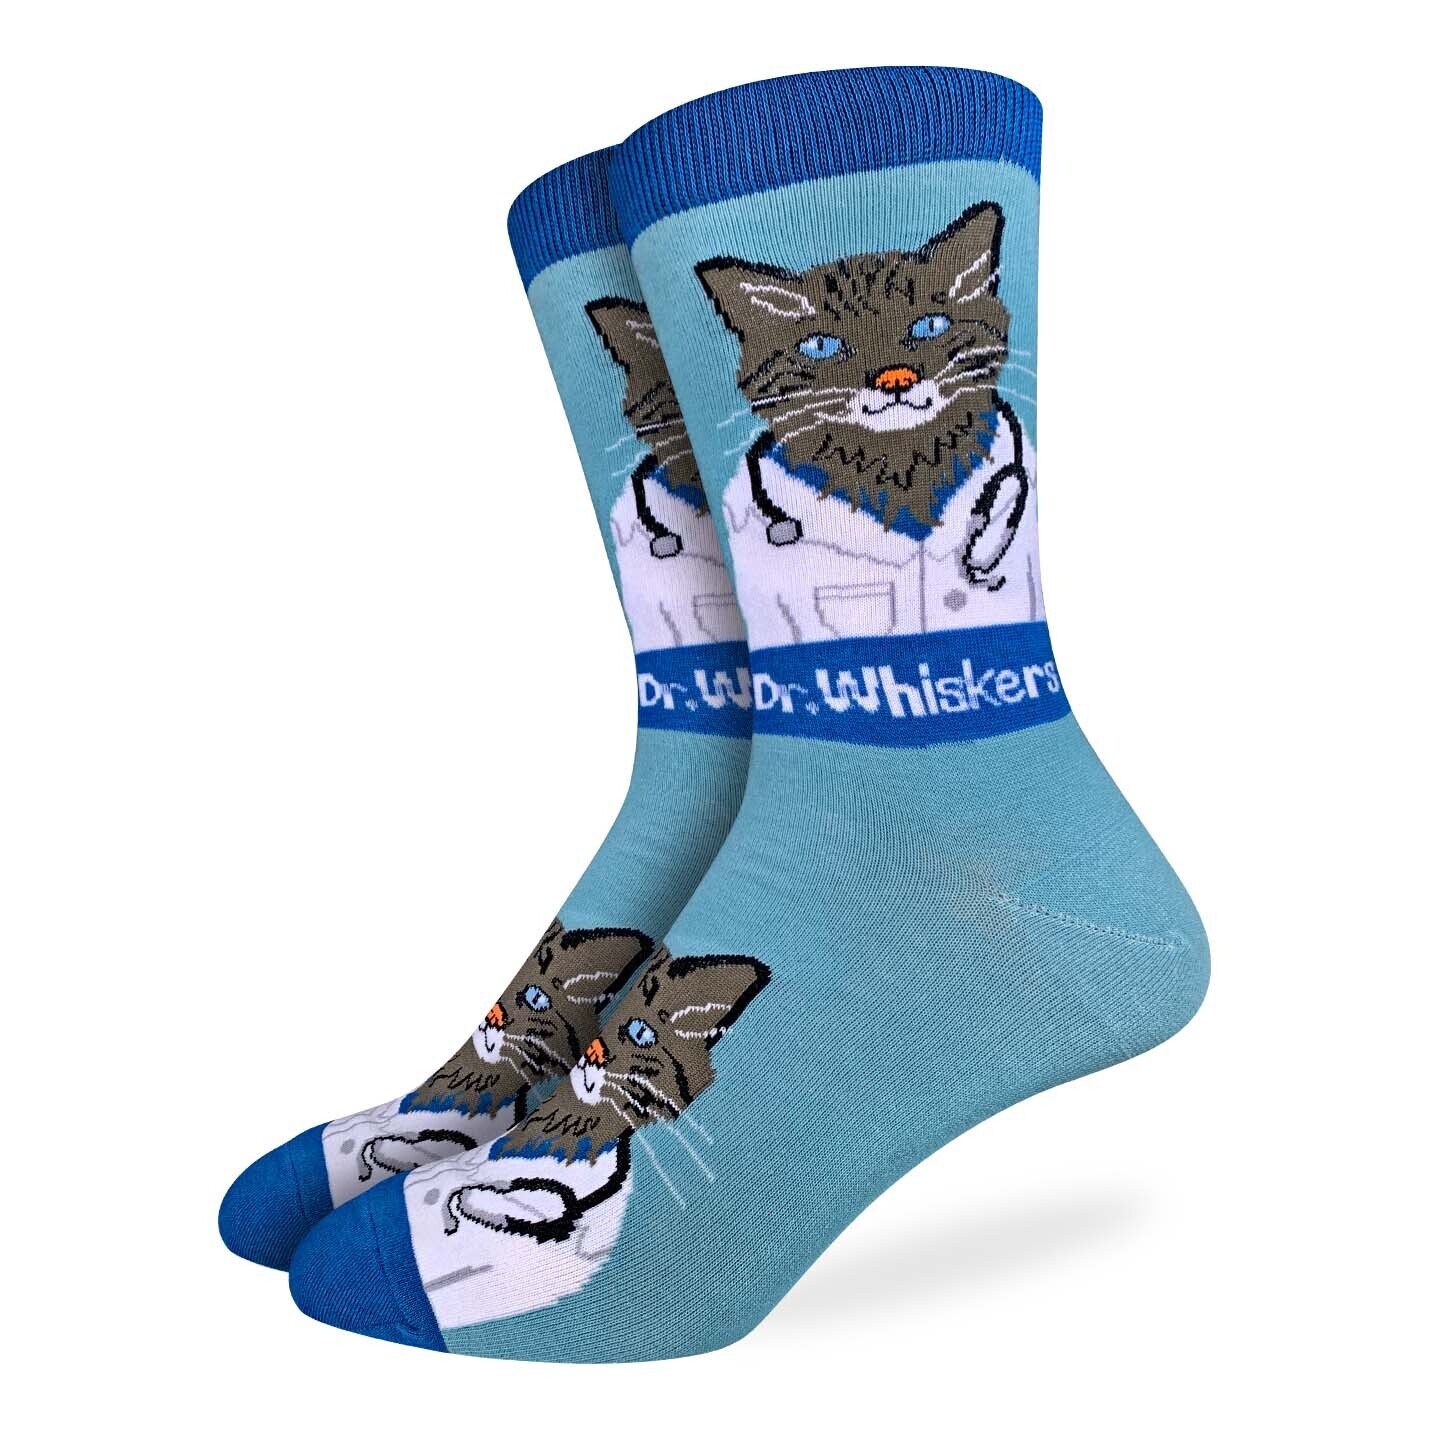 Dr. Whiskers Cat Vet socks | M/L adult sizes | Good Luck Sock